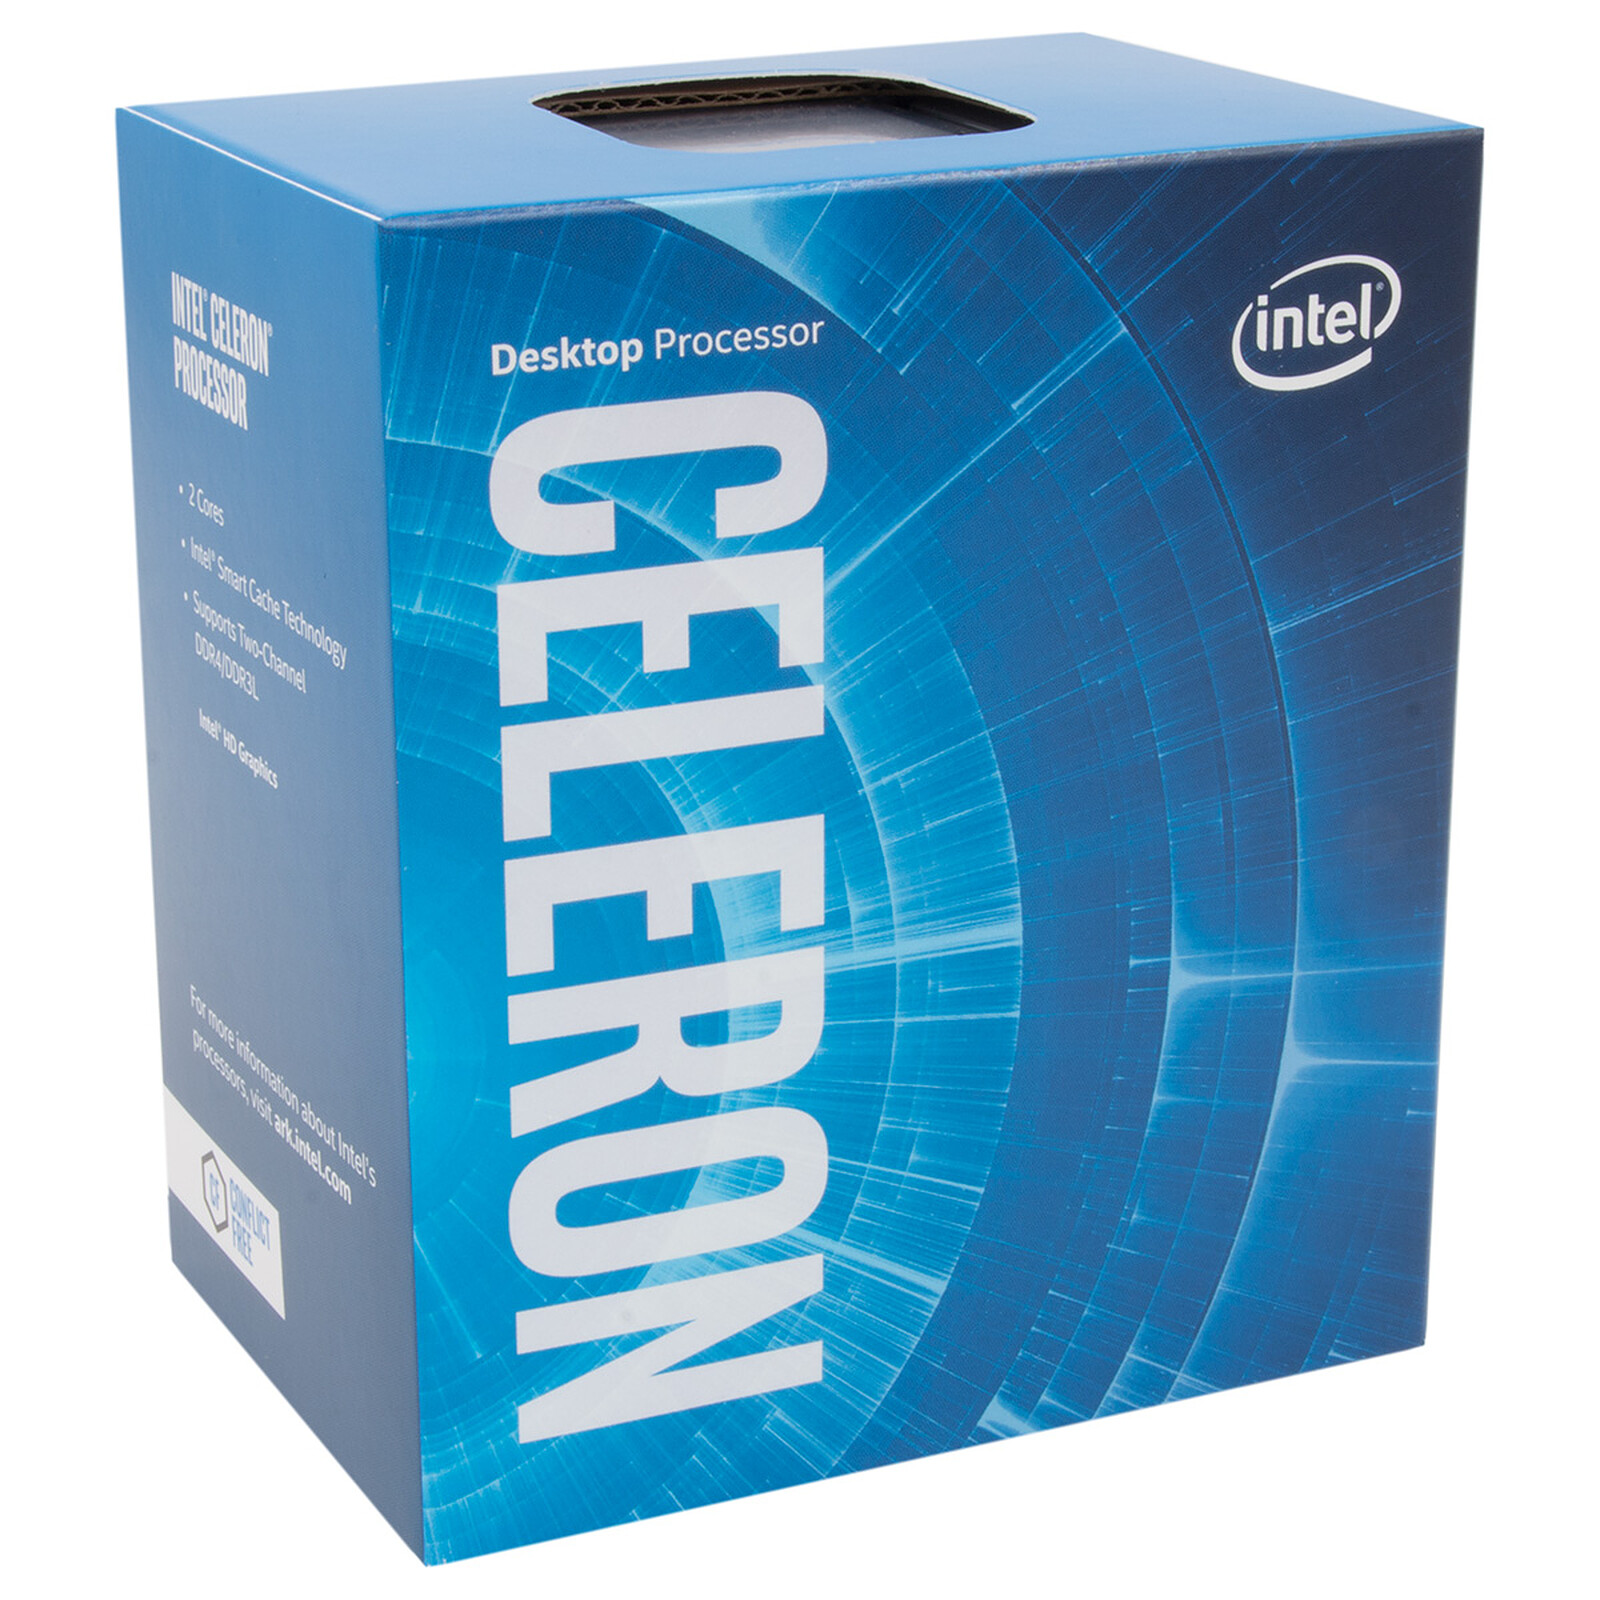 Intel Celeron G3930 (2.9 GHz)